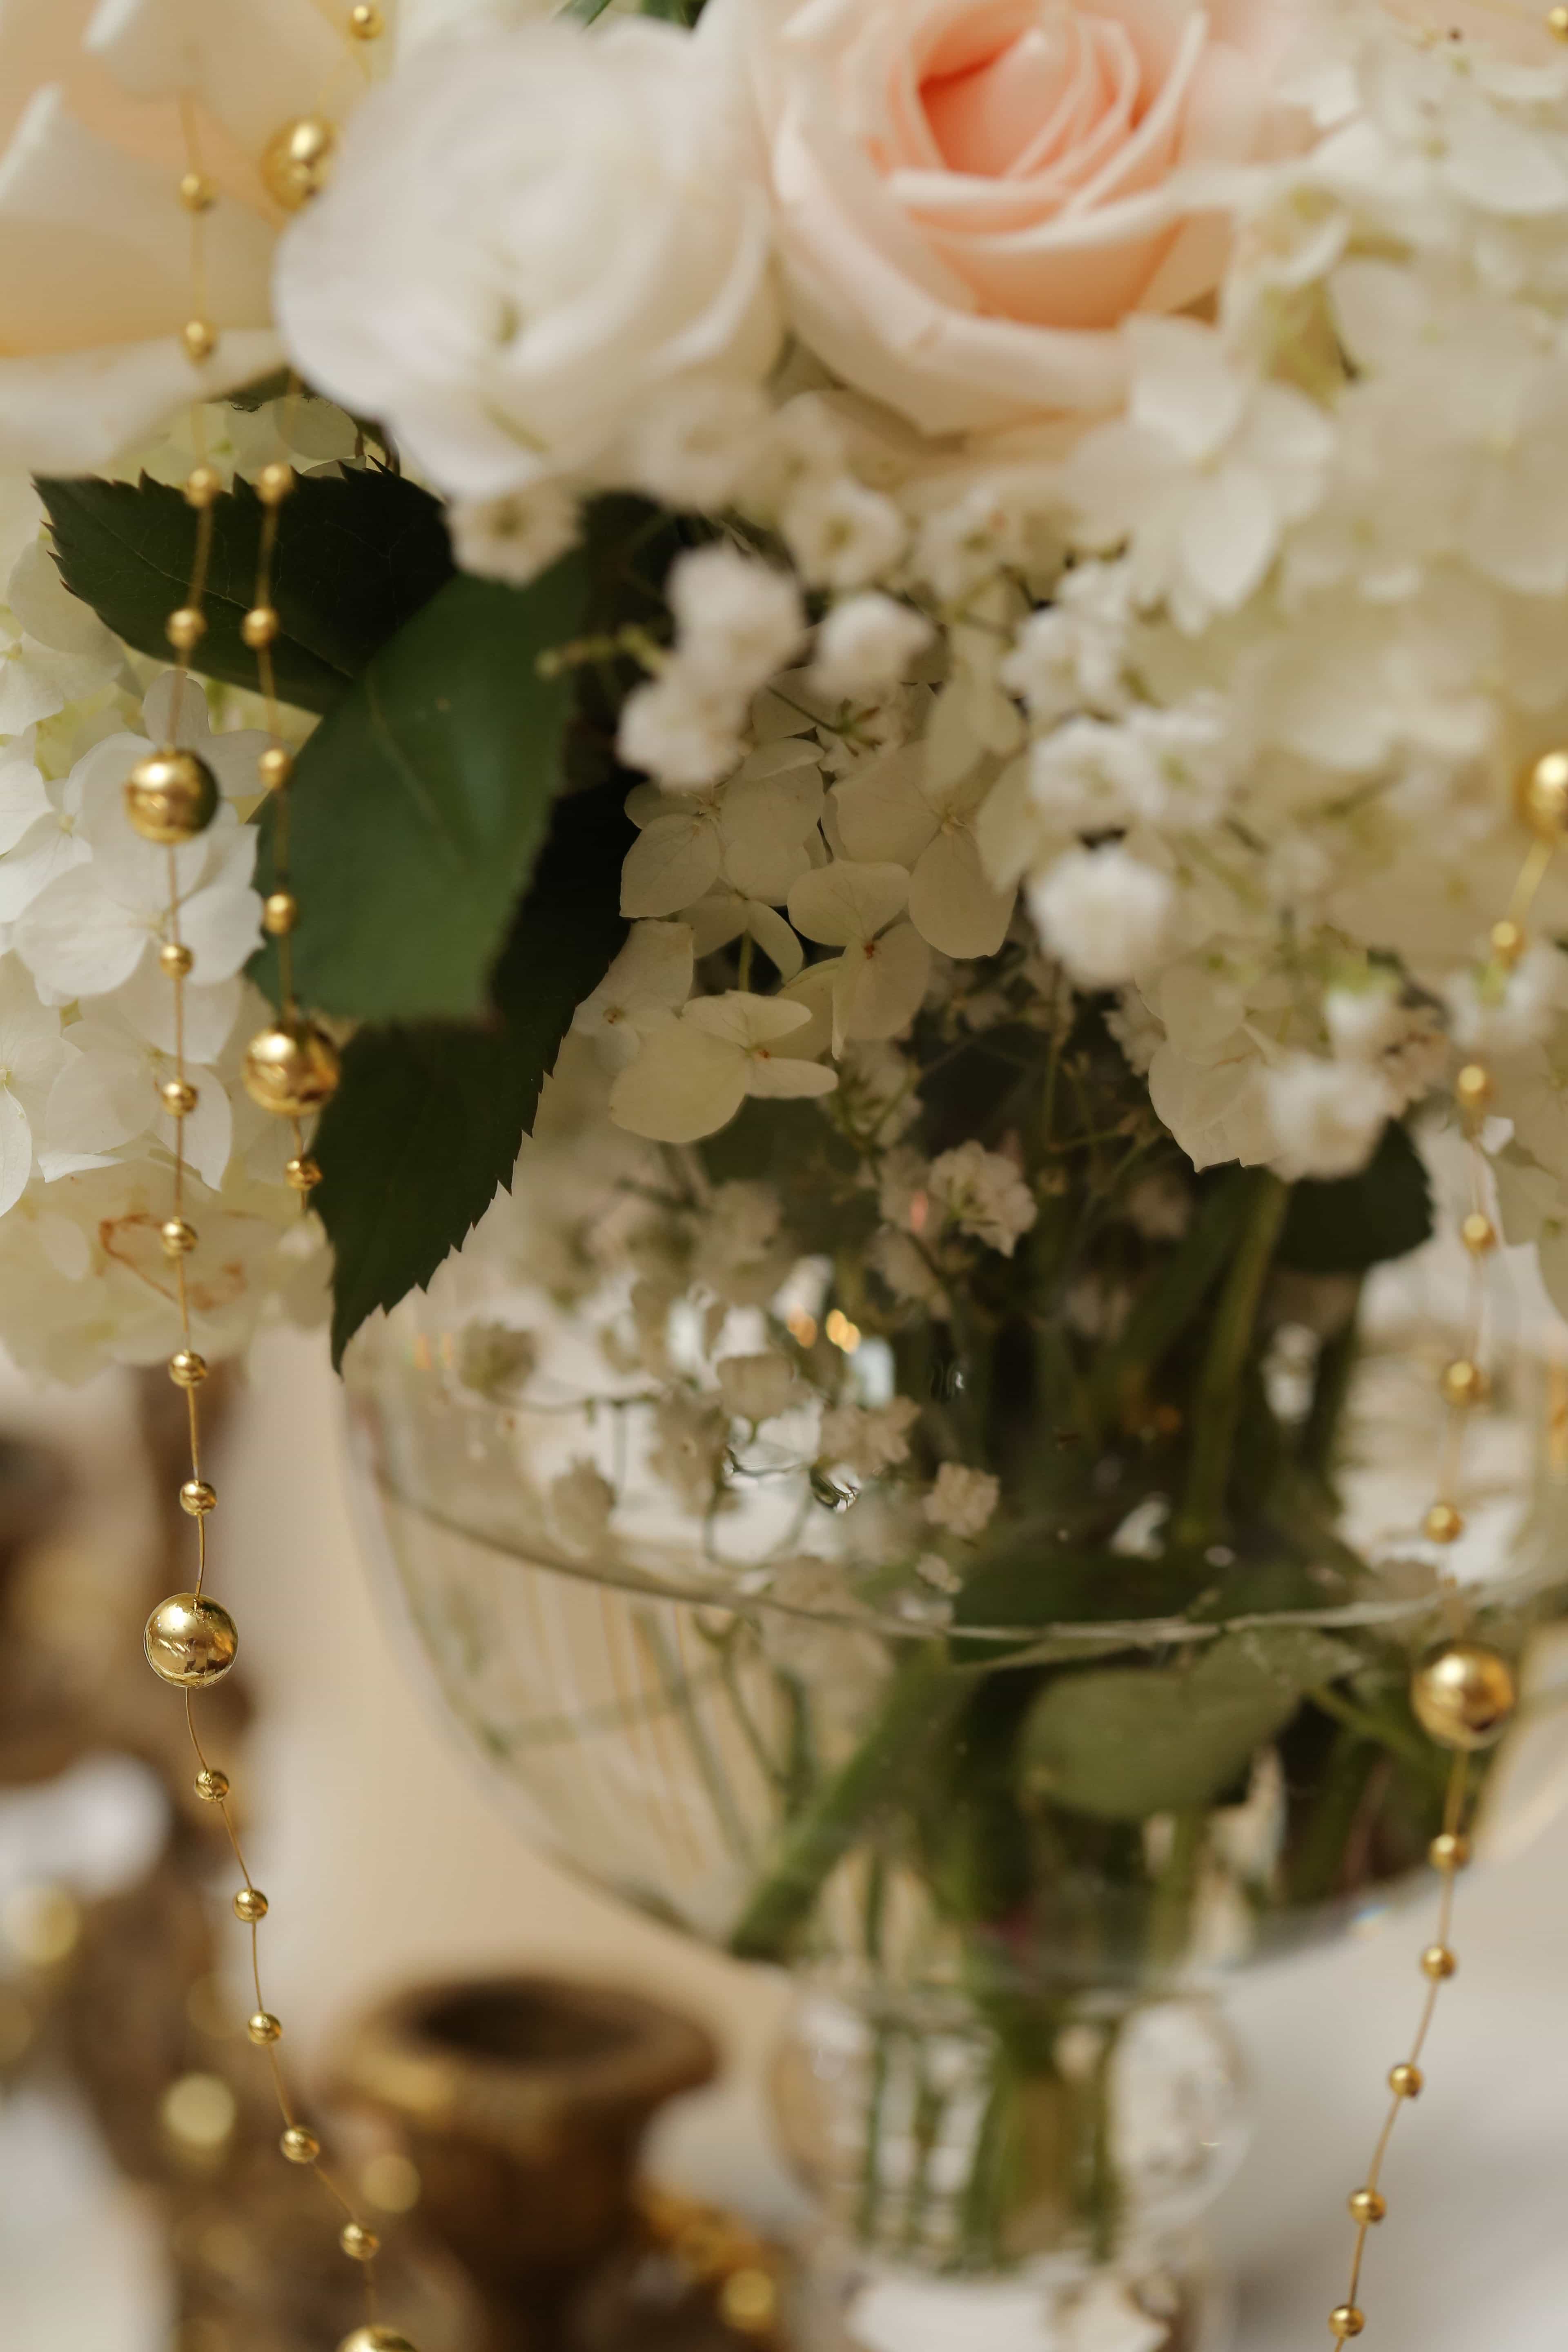 免费照片 碗 金色光芒 浪漫 玫瑰 花瓶 白花 新娘 花 婚礼 爱